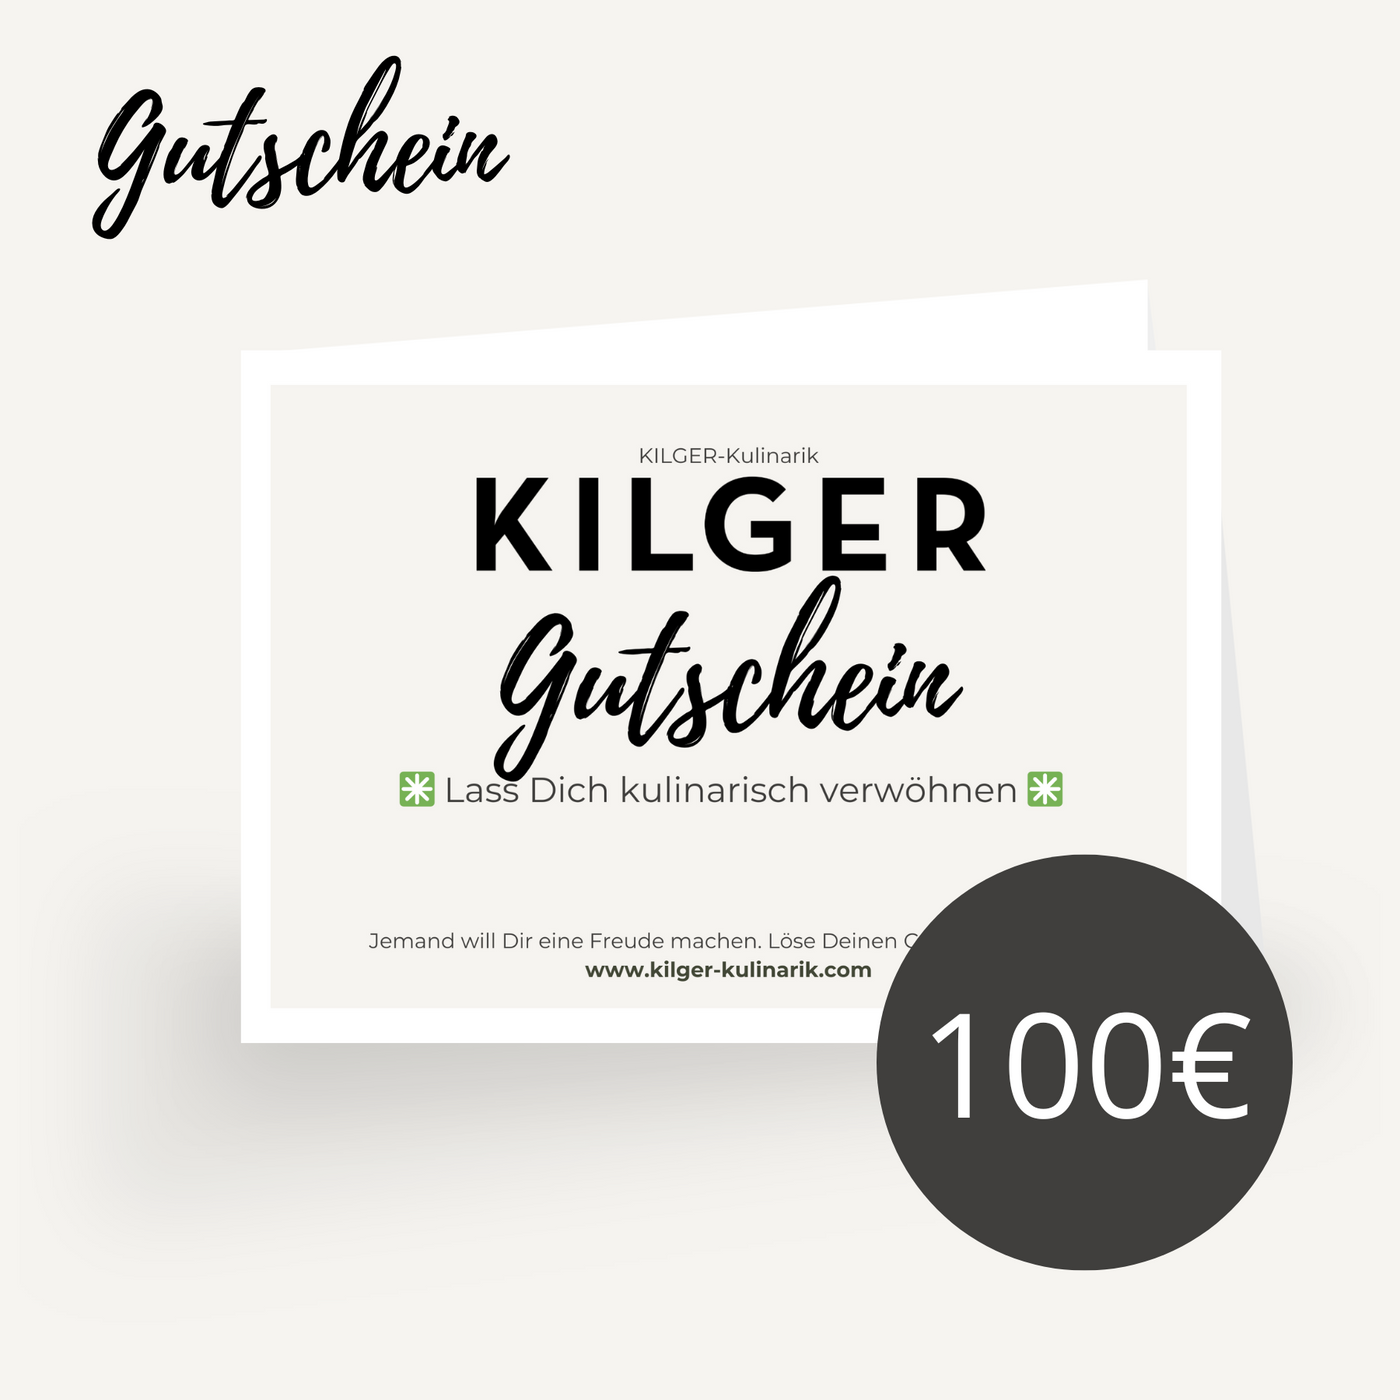 KILGER Kulinarik Gutschein zum Ausdrucken und für's iPhone Wallet